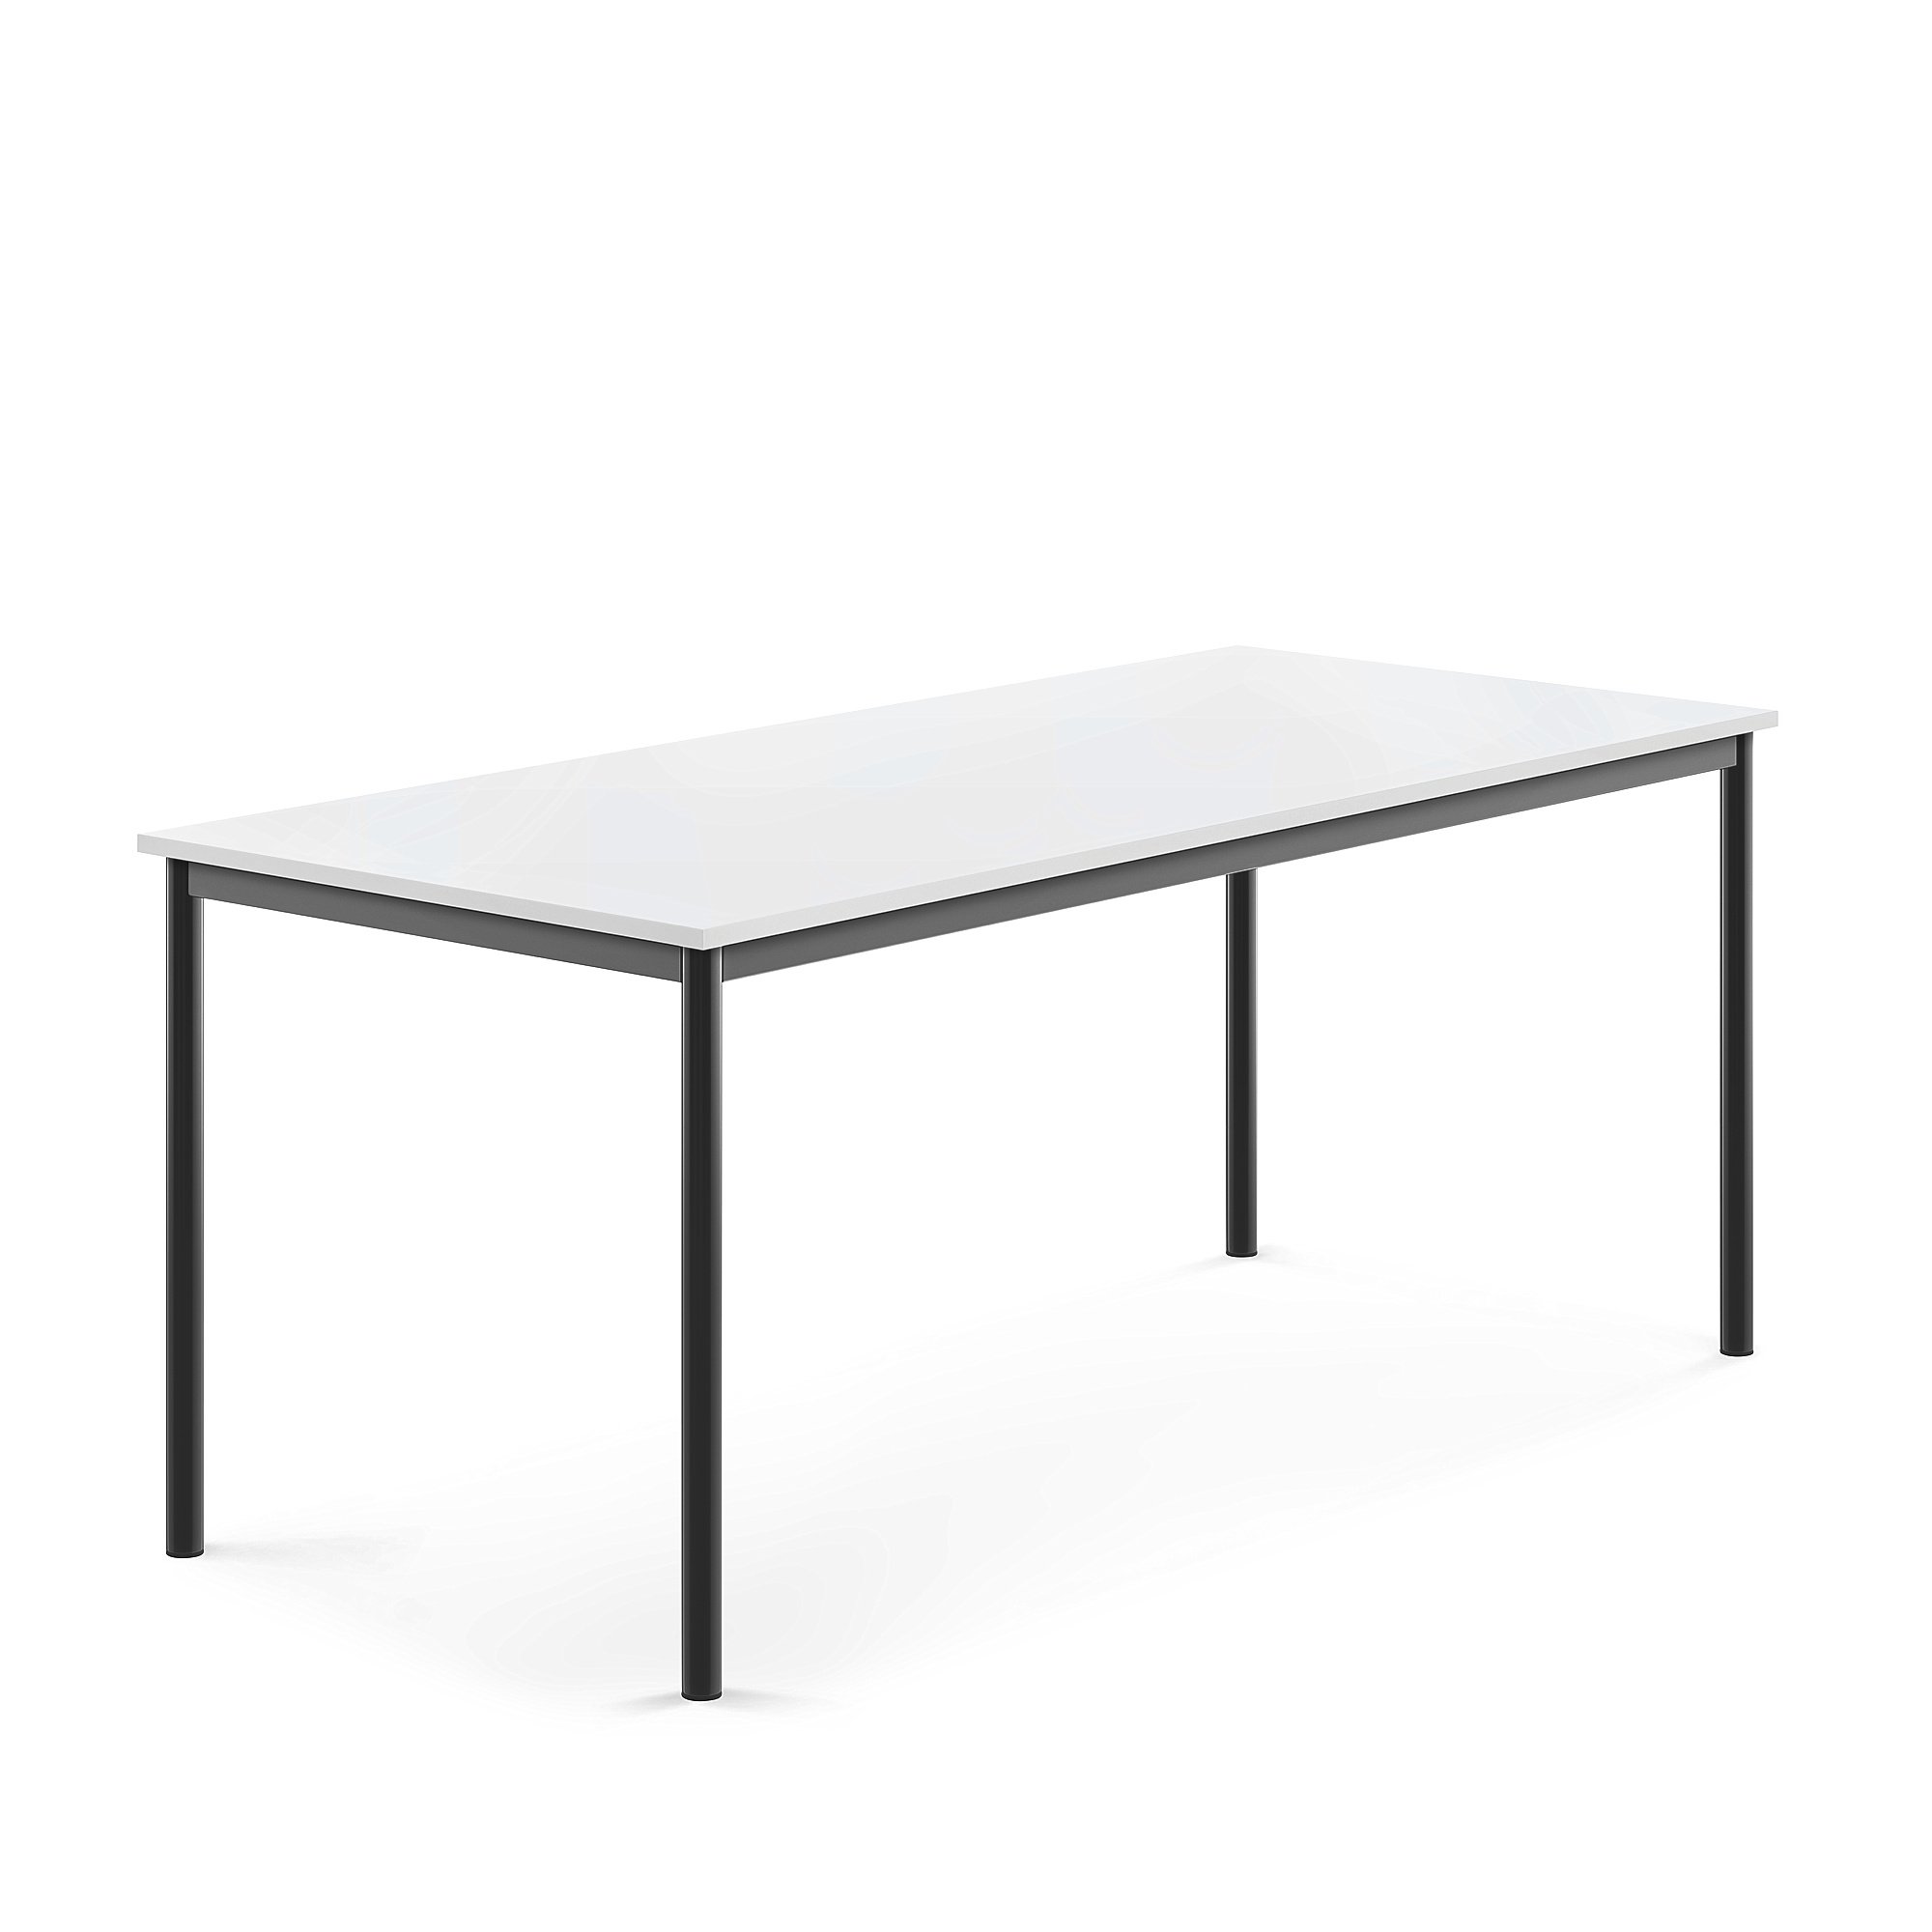 Stůl SONITUS, 1800x800x720 mm, antracitově šedé nohy, HPL deska tlumící hluk, bílá